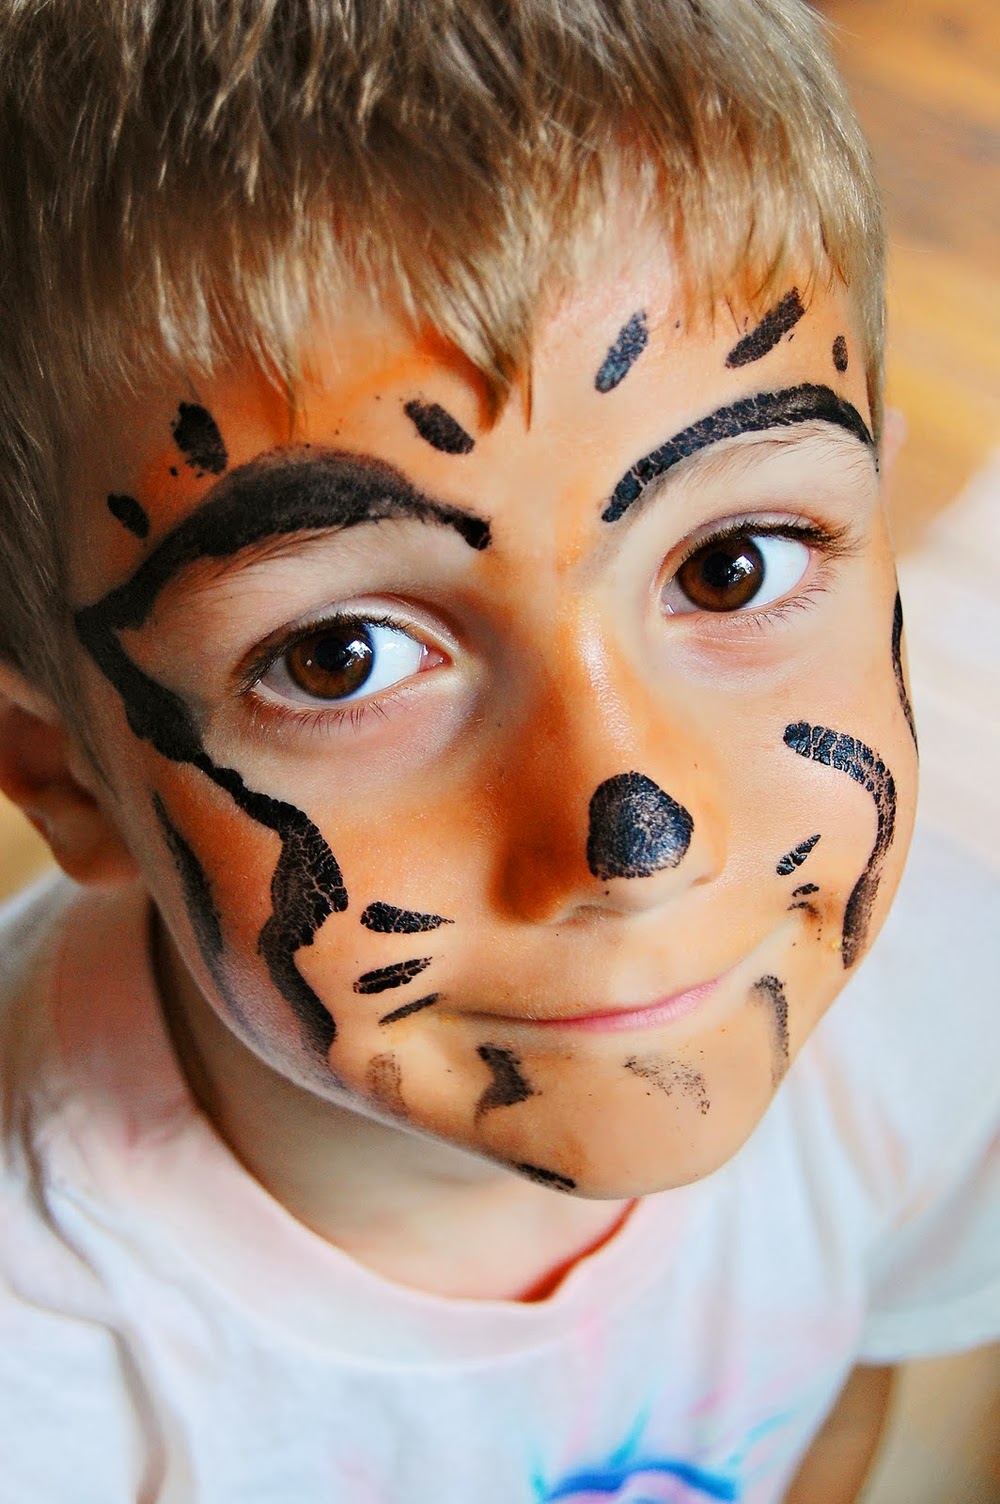 افكار للرسم علي وجه الاطفال , رسم الوجه للاطفال - صبايا كيوت